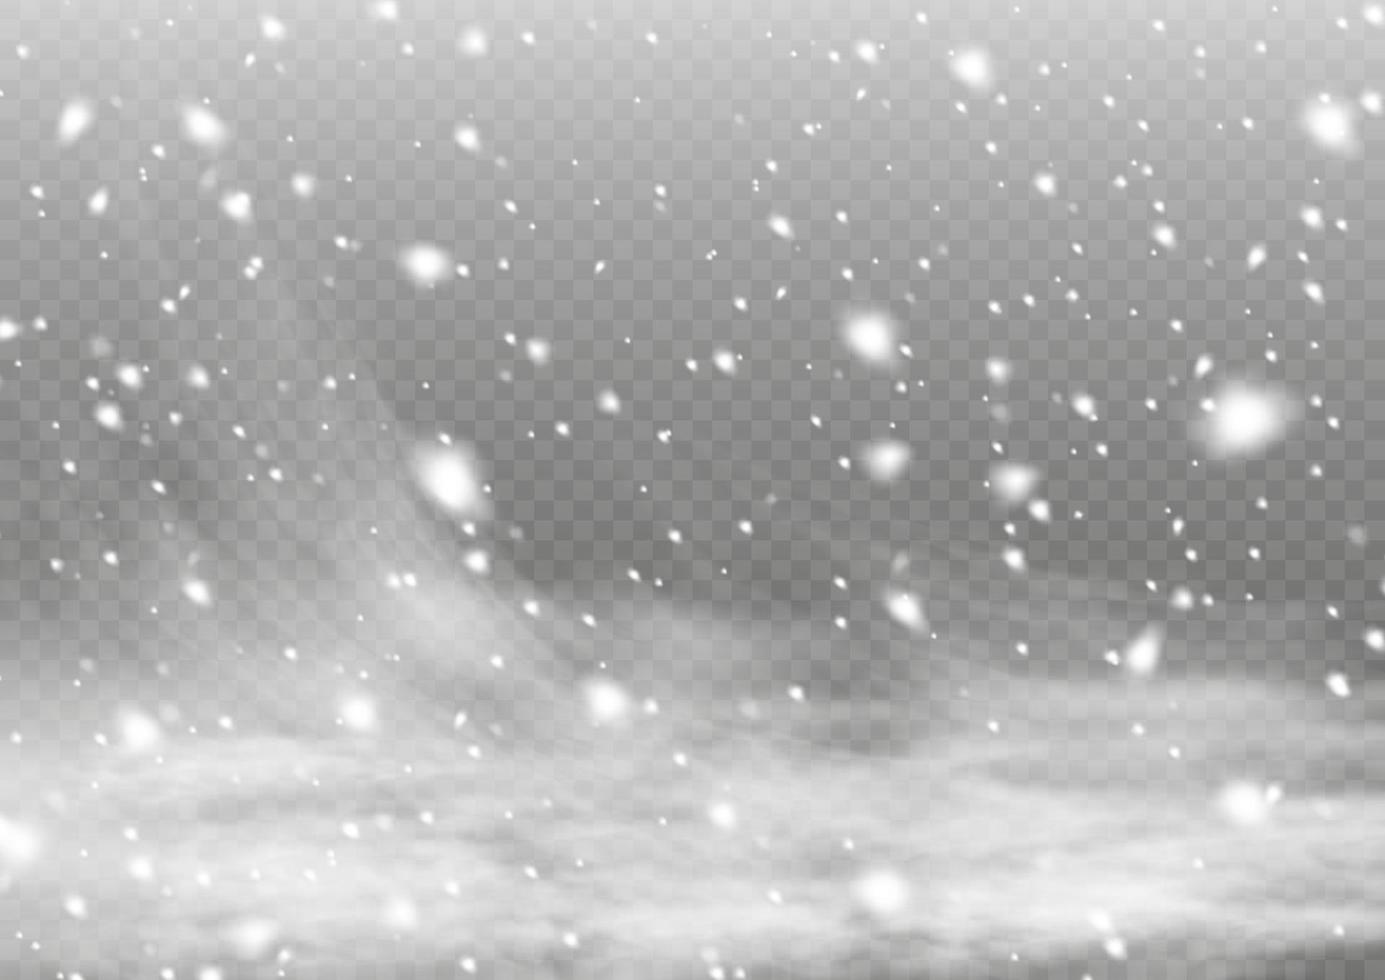 vinter- och snö med dimma. vind och dimma. snö och vind. vit lutning dekorativ element. mector illustration. ljus, damm, vinter, snöstorm, jul, vektor. vektor